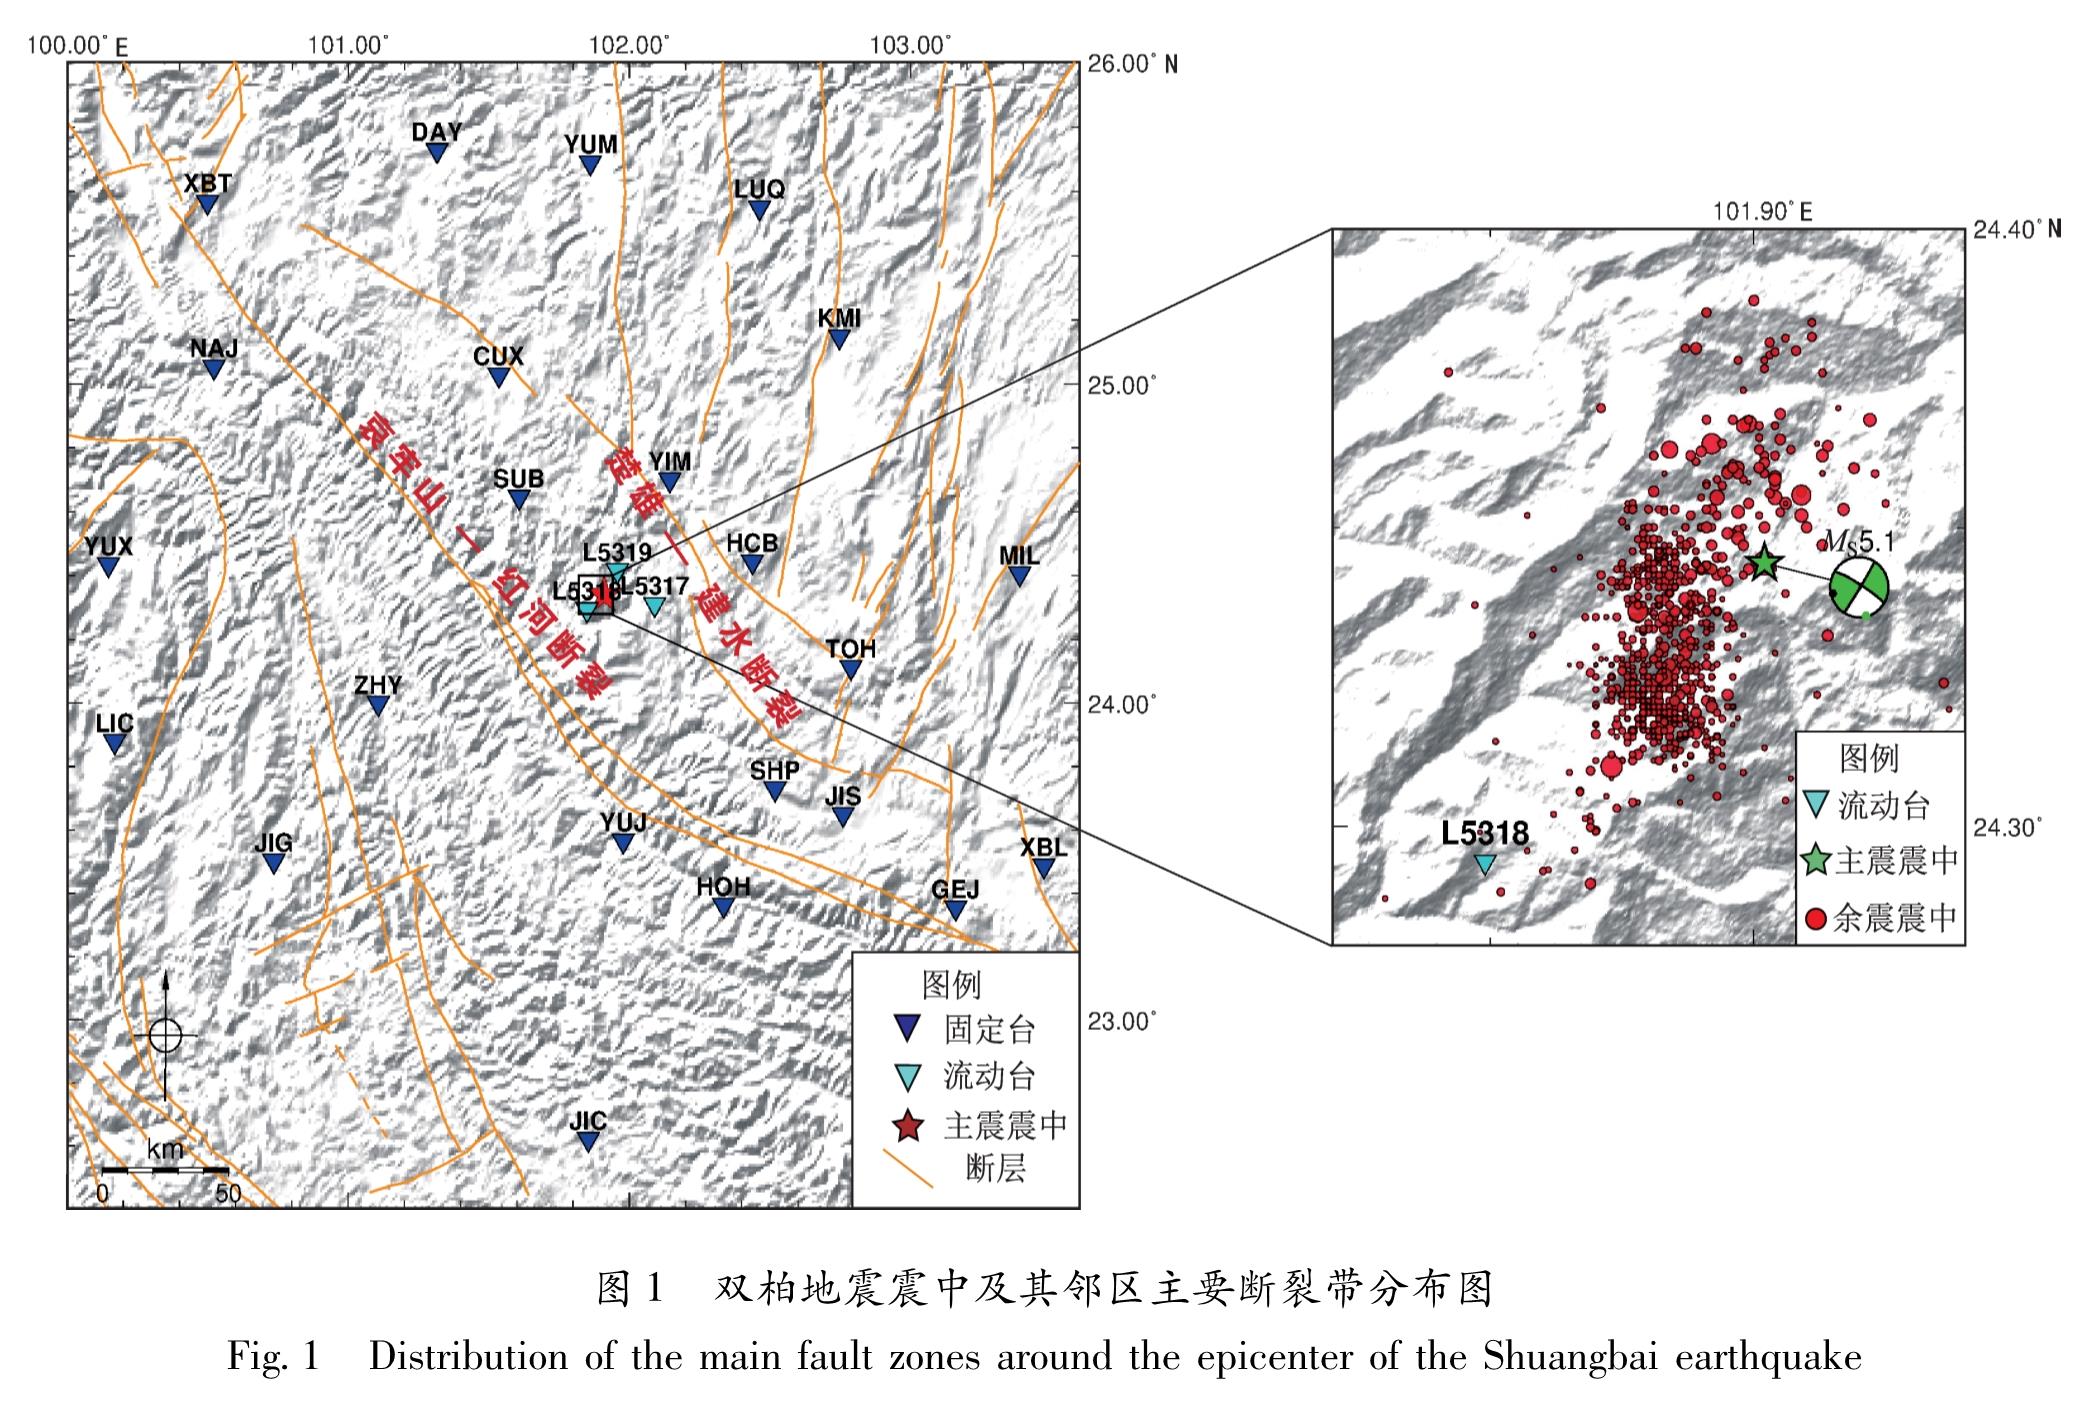 图1 双柏地震震中及其邻区主要断裂带分布图<br/>Fig.1 Distribution of the main fault zones around the epicenter of the Shuangbai earthquake